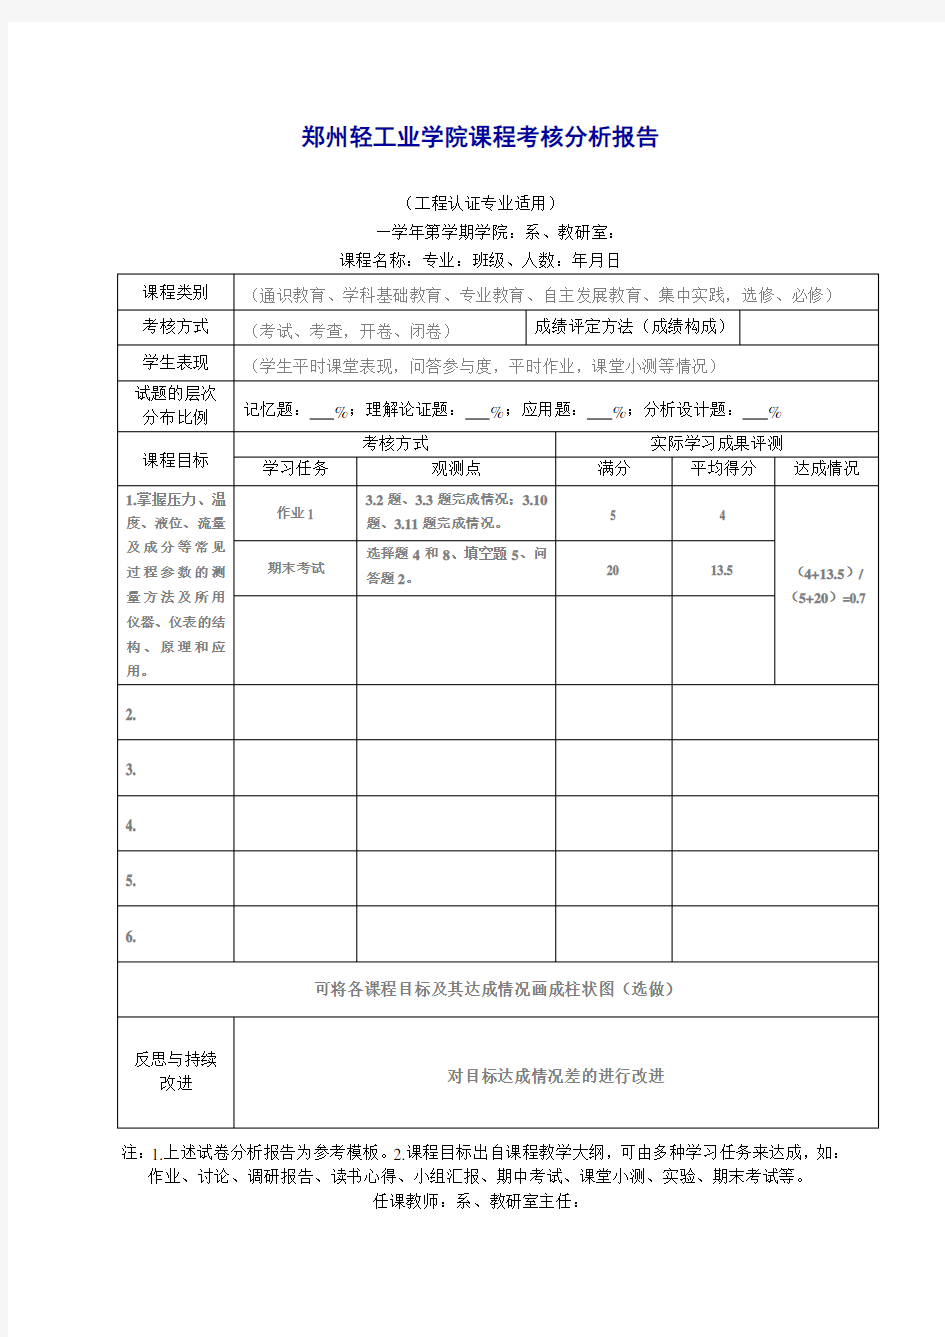 郑州轻工业学院课程考核分析报告